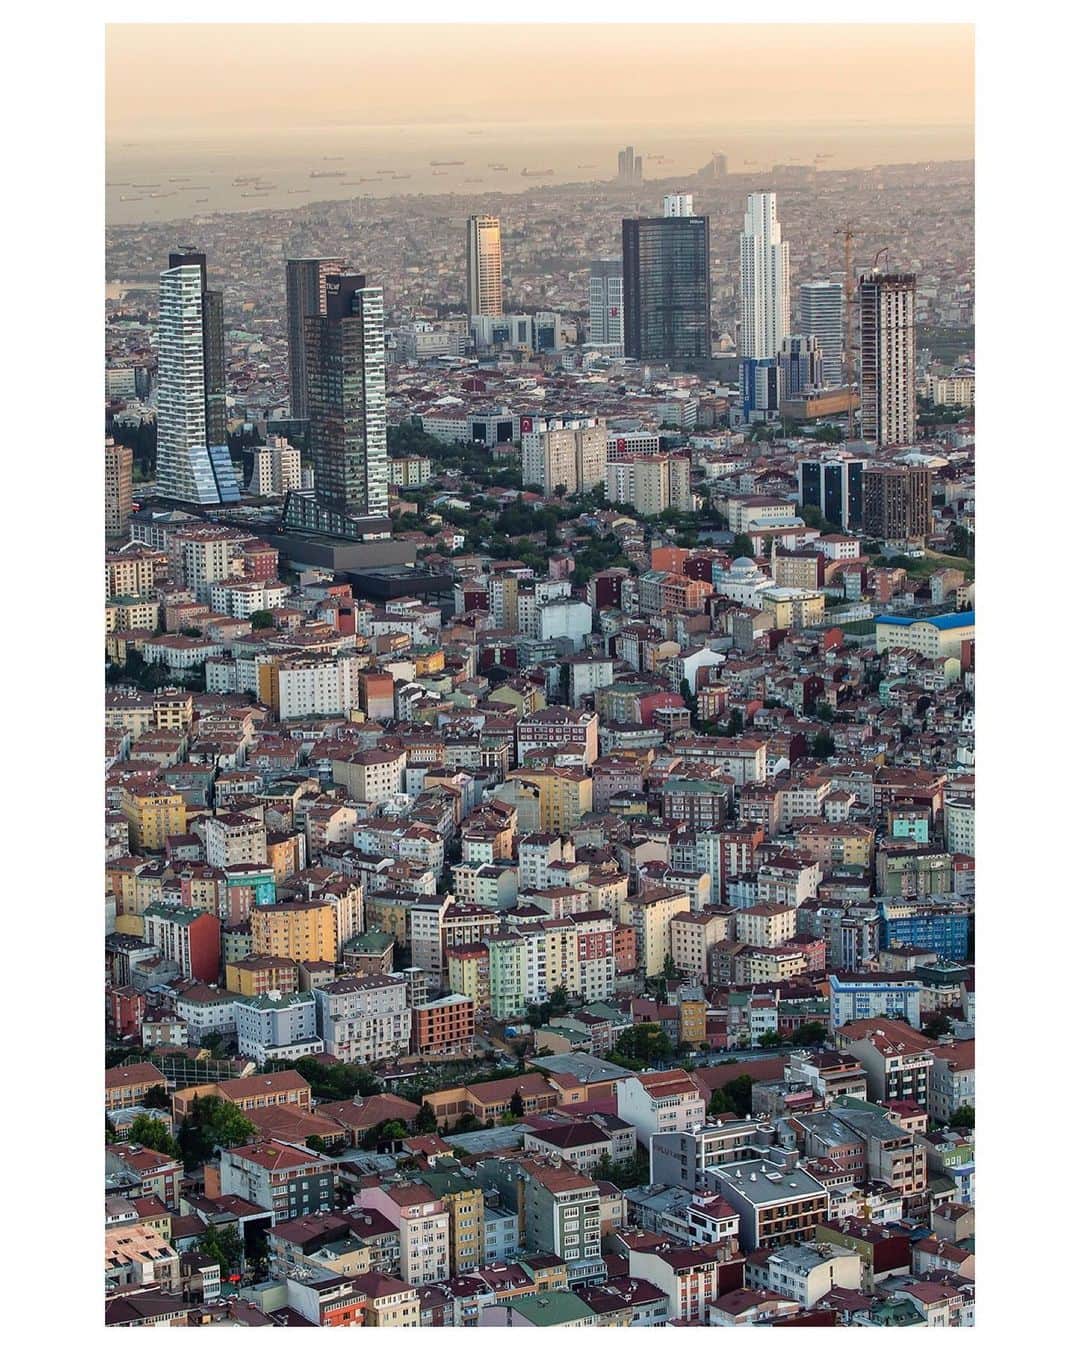 Mustafa Sevenのインスタグラム：「#İstanbul un farklı mahallelerinden farklı zamanlarda çektiğim fotograflar. Böyle bir zamanda felaket tellallığı yapıp sıcak evlerimizde huzurunuzu kaçırmak değil amacım ama biraz kaçsa artık huzur iyi olur. Televizyondan izlemeye benzemiyor deprem bölgeleri. Yaşayan, gören çok iyi bilir. Olası bir depremde İstanbul’u düşünmeye başladığımda nefes alamıyorum. Yaşanacakları hayal bile edemiyorum. Ali Ağaoğlu’na atfedilen bir söz dolanıyor sürekli sosyal medyada. "Deprem olursa İstanbul'a ordu bile giremez, ölen şanslıdır" !!!  Bu kader değil ! Artık karar vericileri harakete geçirme zamanı. Talep edin, unutmayın unutturmayın. İnsanca bir yaşam hepimizin hakkı. Fotograflar işte karşınızda yorum sizin !  #Deprem #Afet」